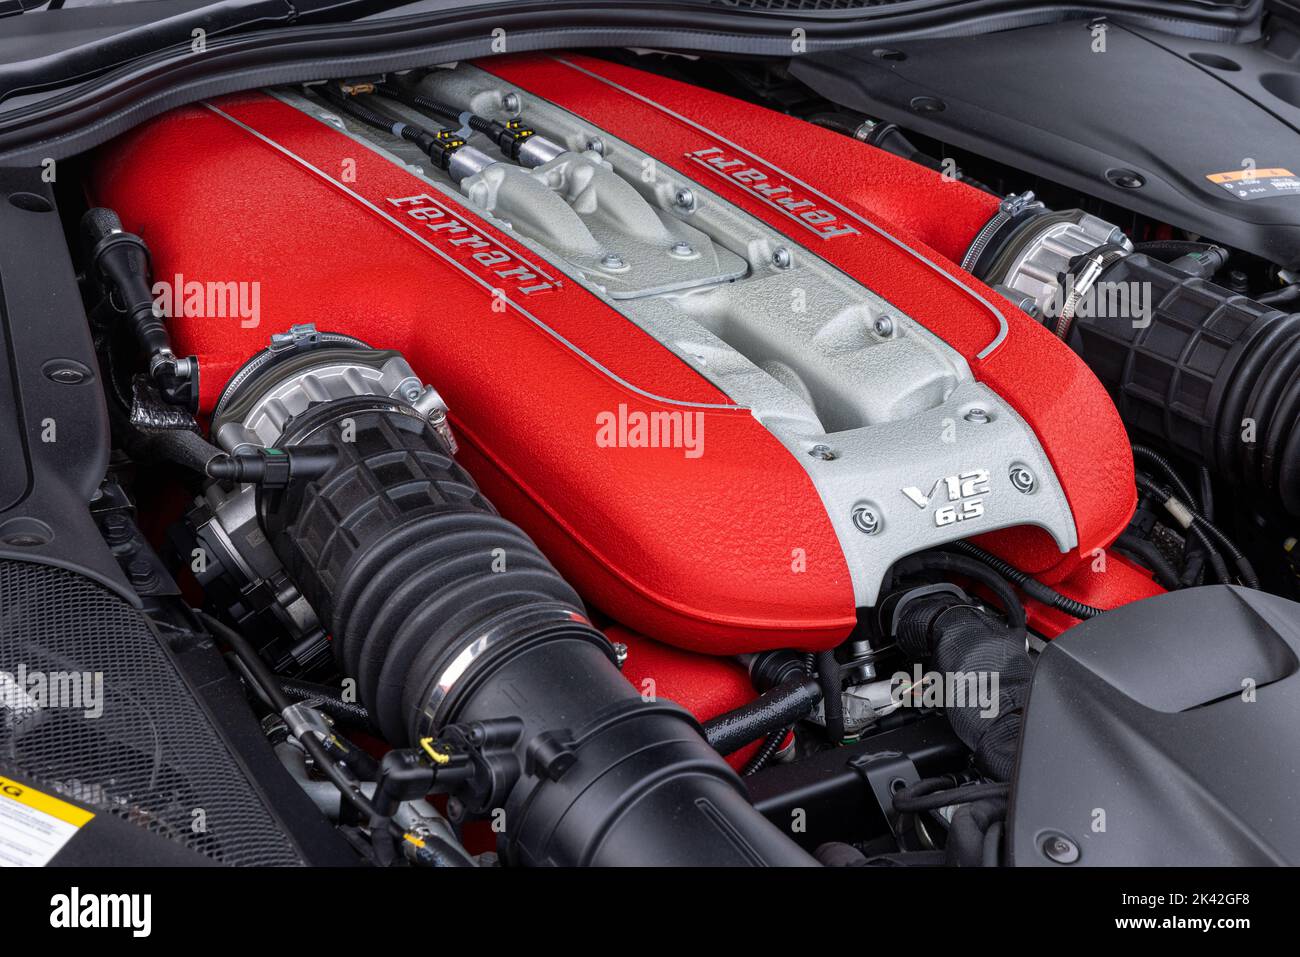 Ferrari 812 Superfast V-12 engine Stock Photo